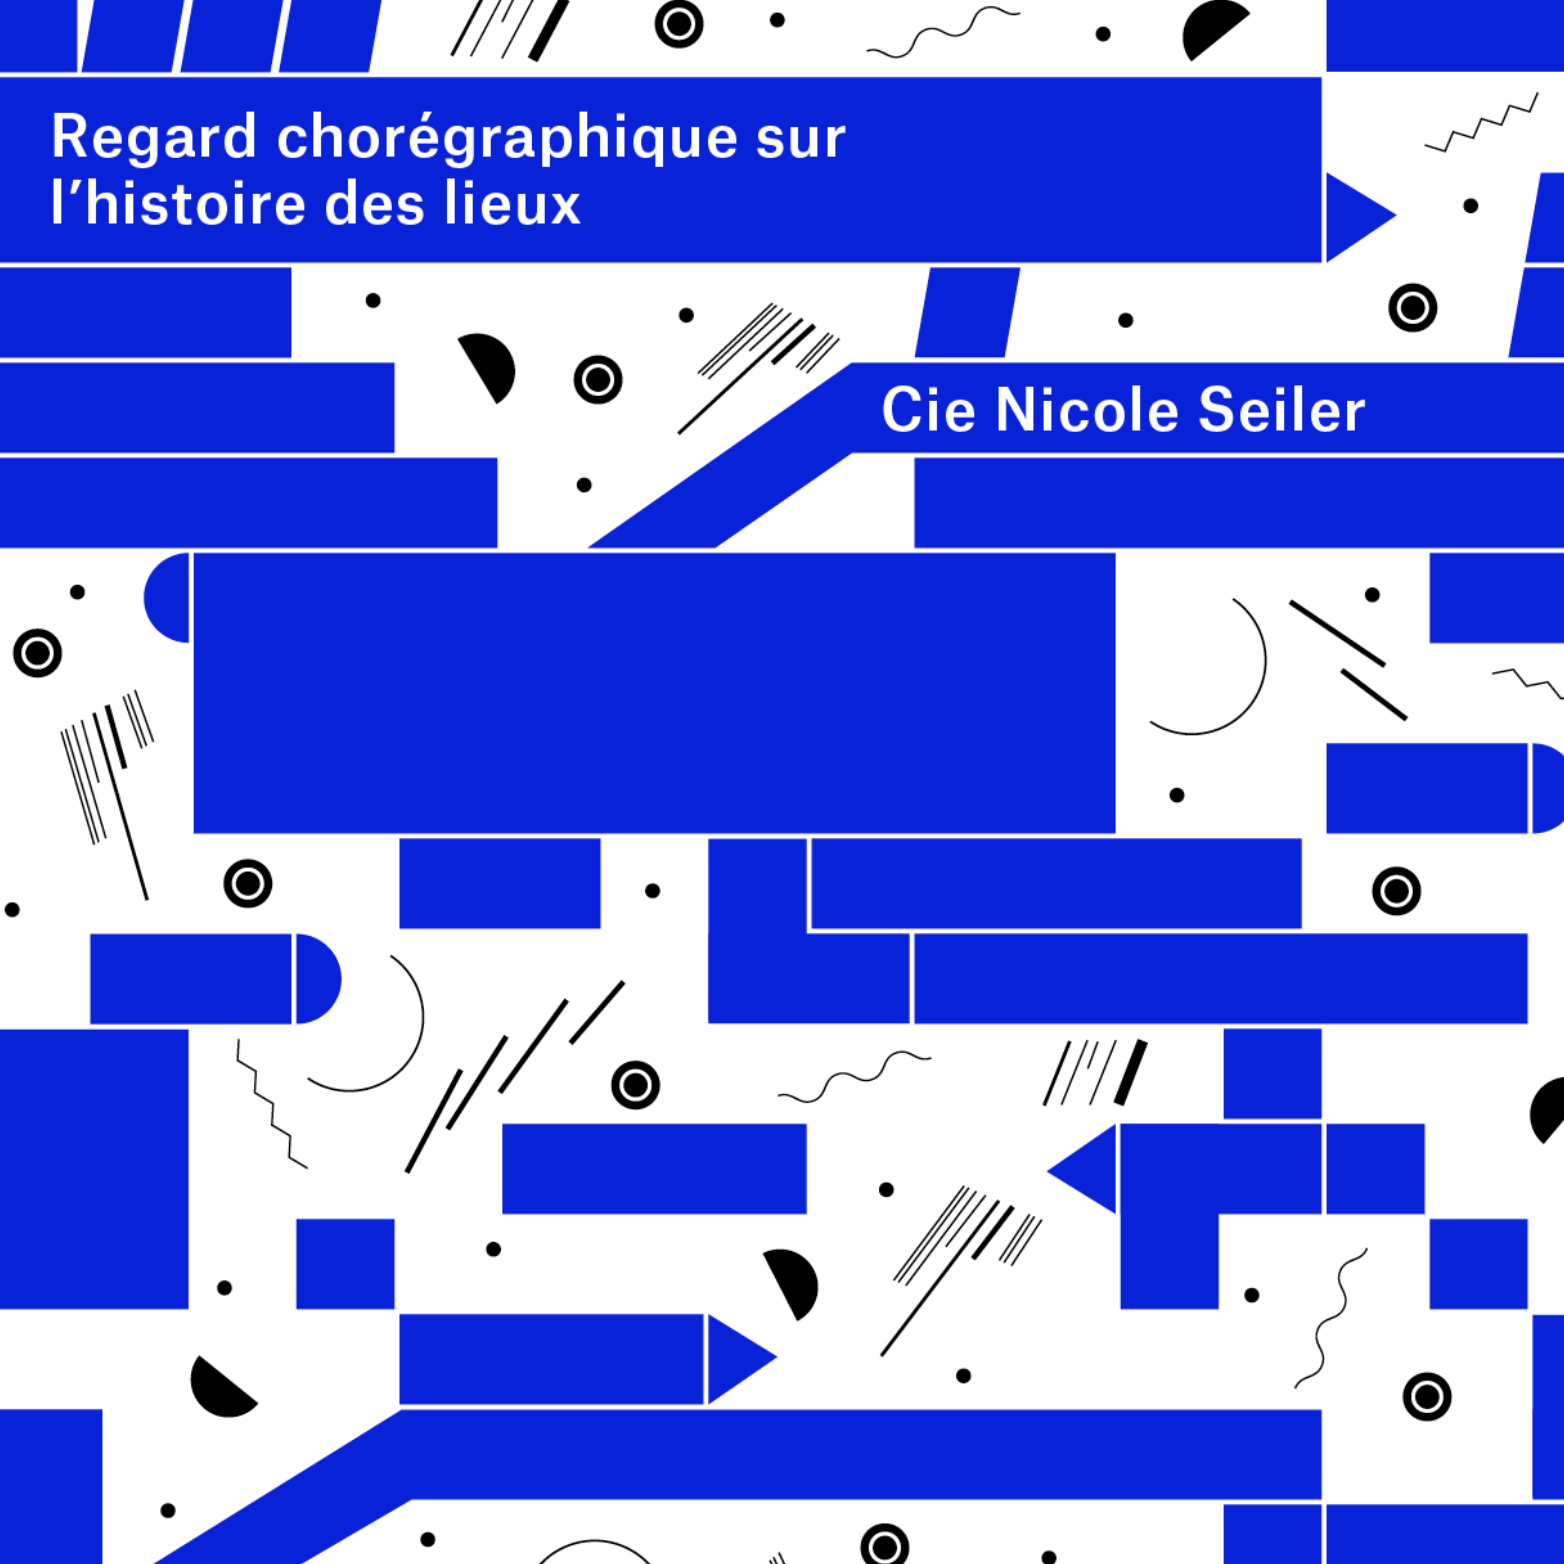 Palimpsest 
Parcours Sonores-Cie Nicole Seiler